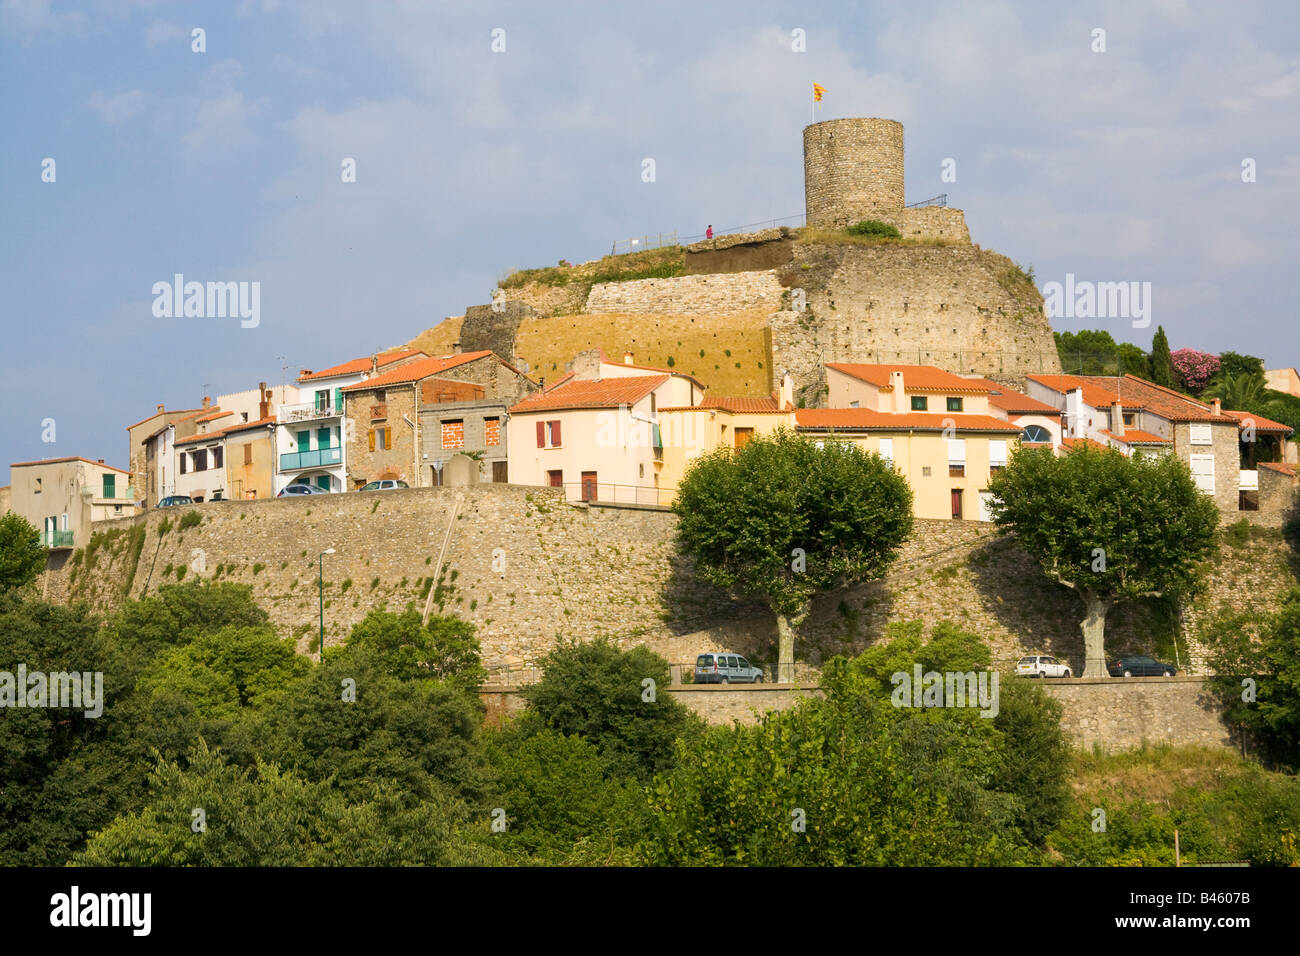 Les ruines de l'ancien château de Laroque des Albères tower au-dessus de la ville de Laroque des Albères / Sud de France Banque D'Images